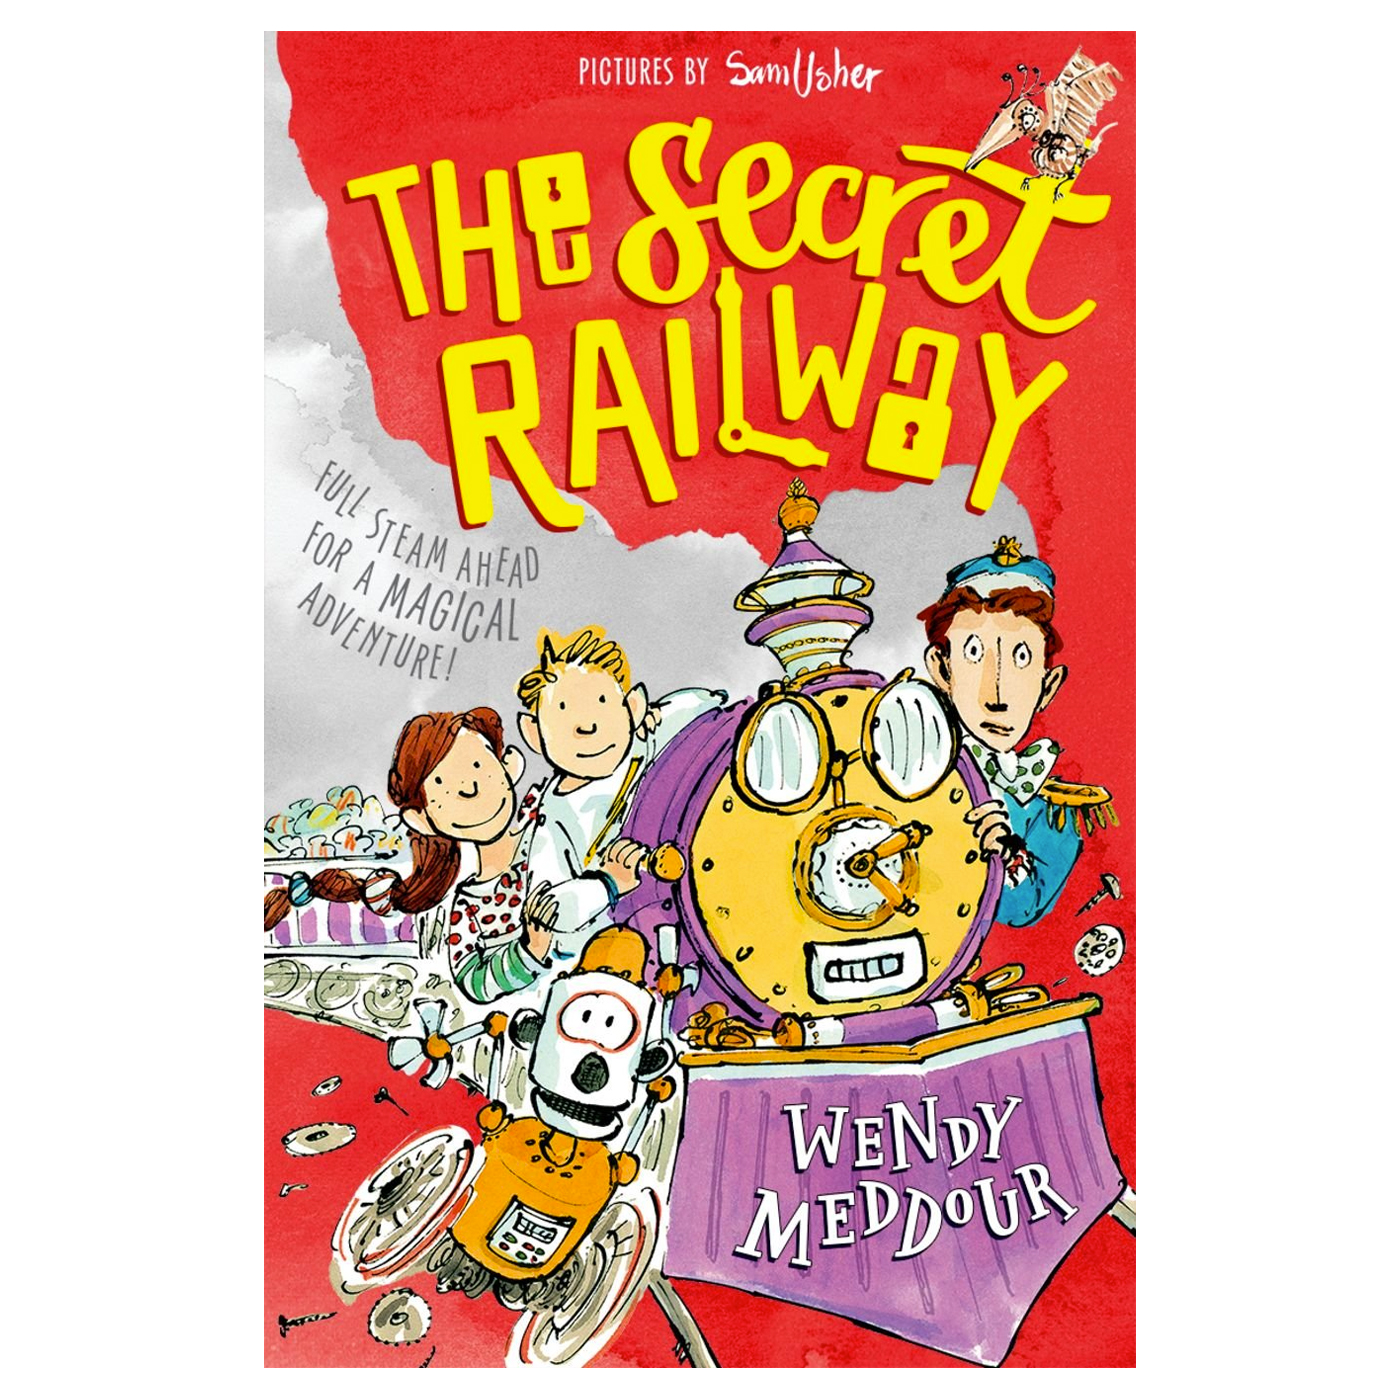  The Secret Railway